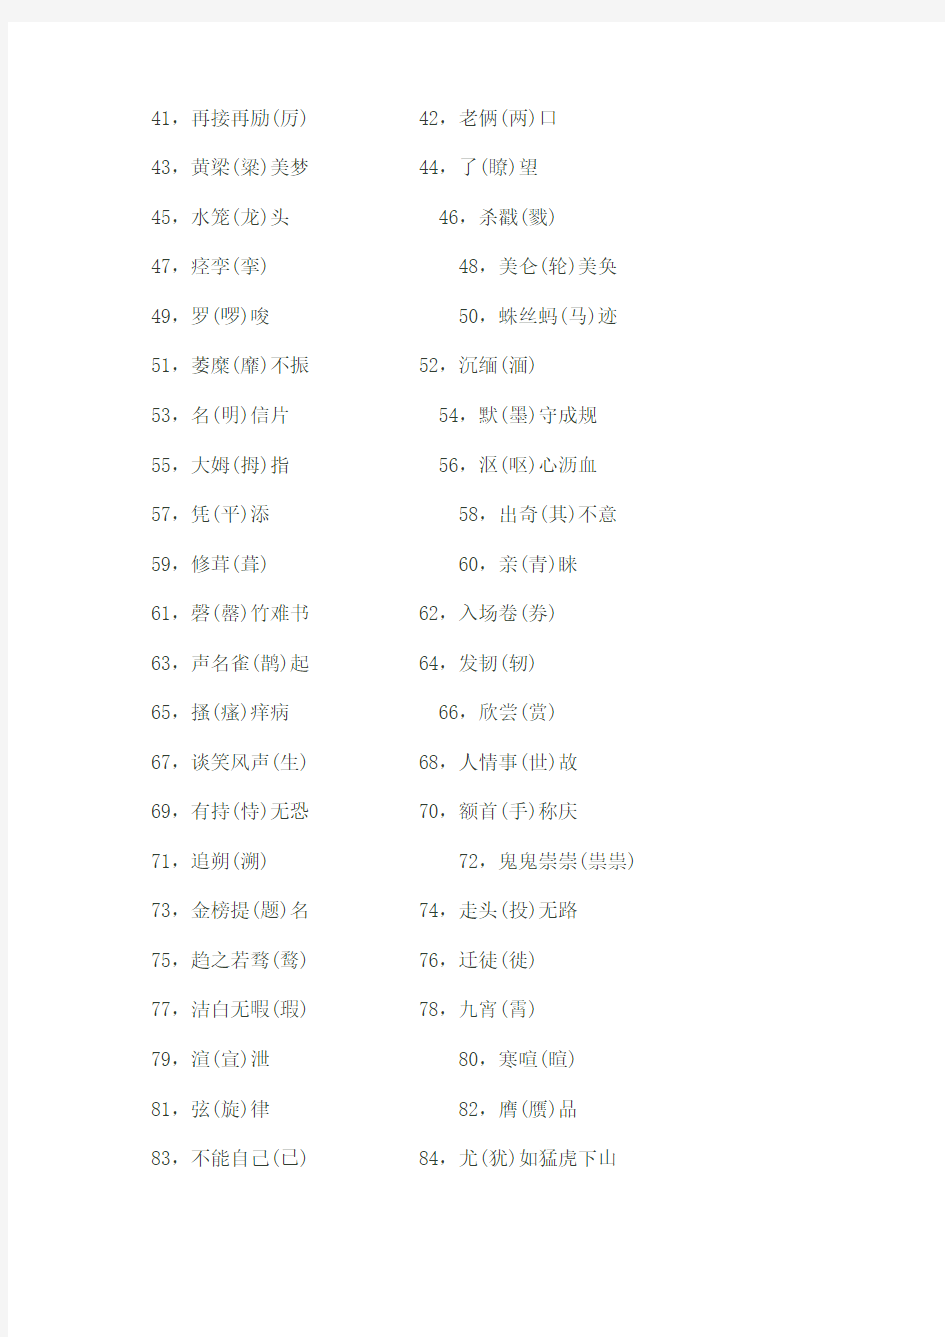 【新版】最容易写错、读错的100个汉字(小升初)